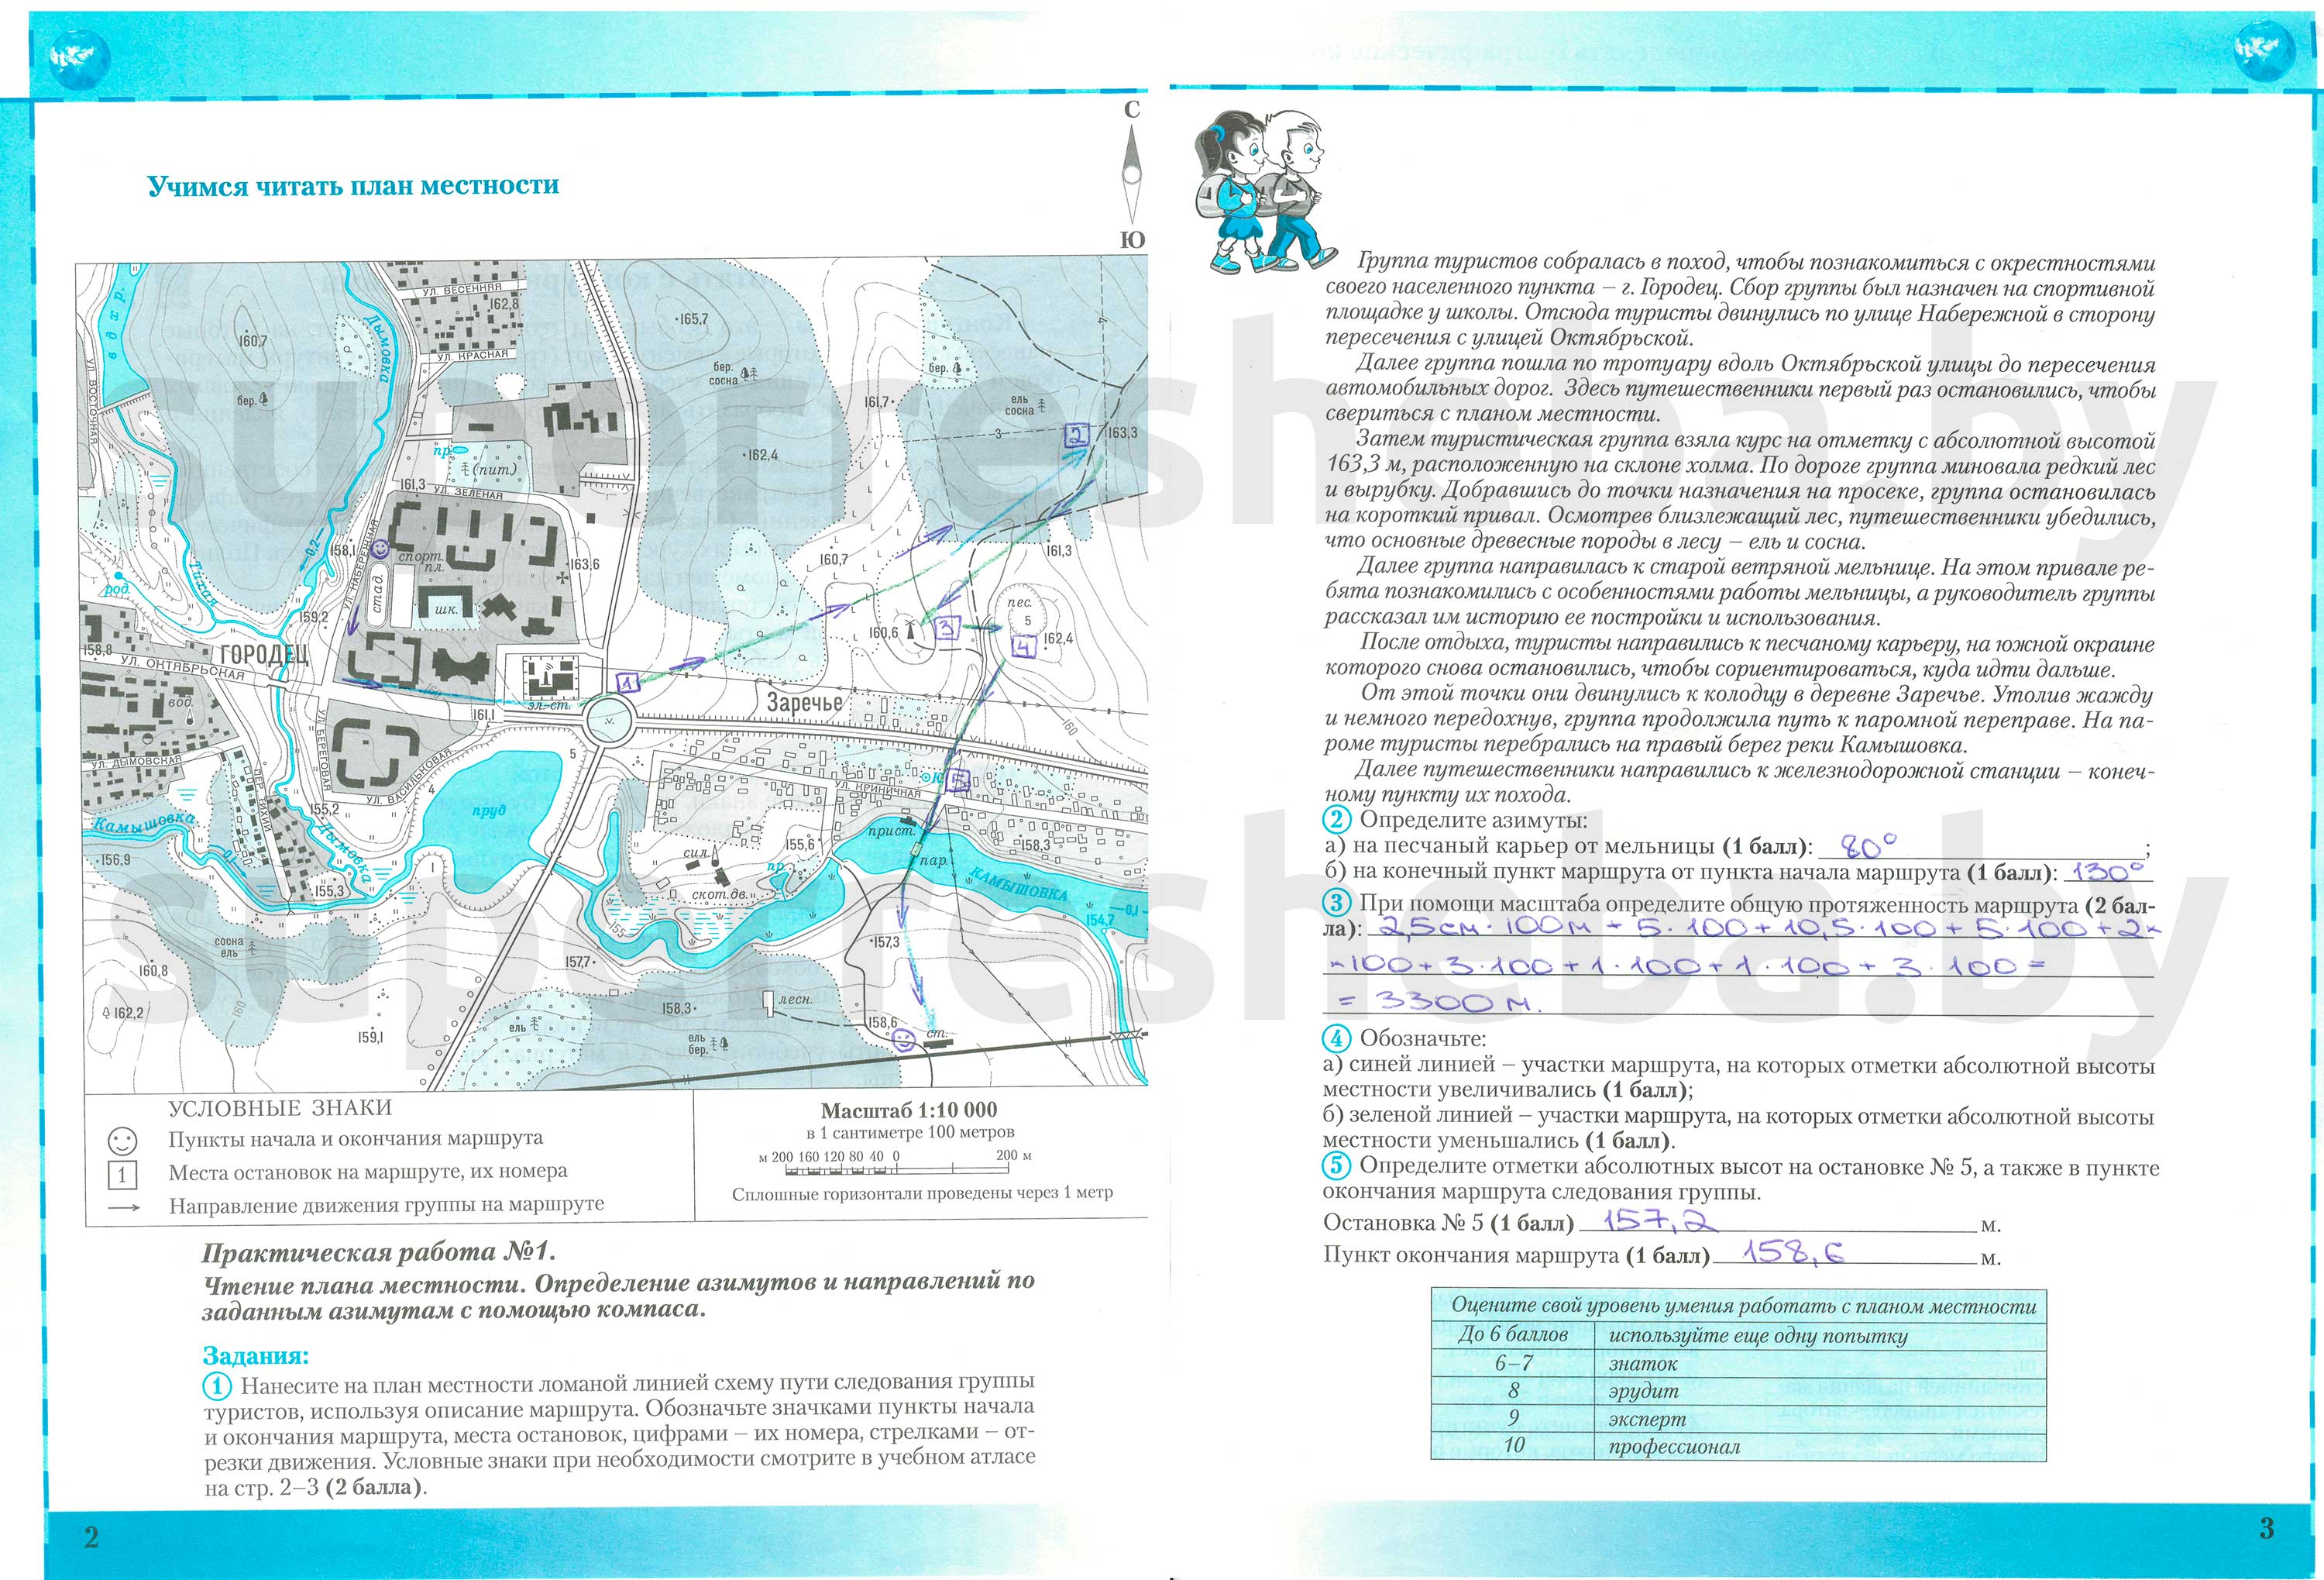 Практические задания по теме:«Учимся читать план местности», стр. 2-3 - решение